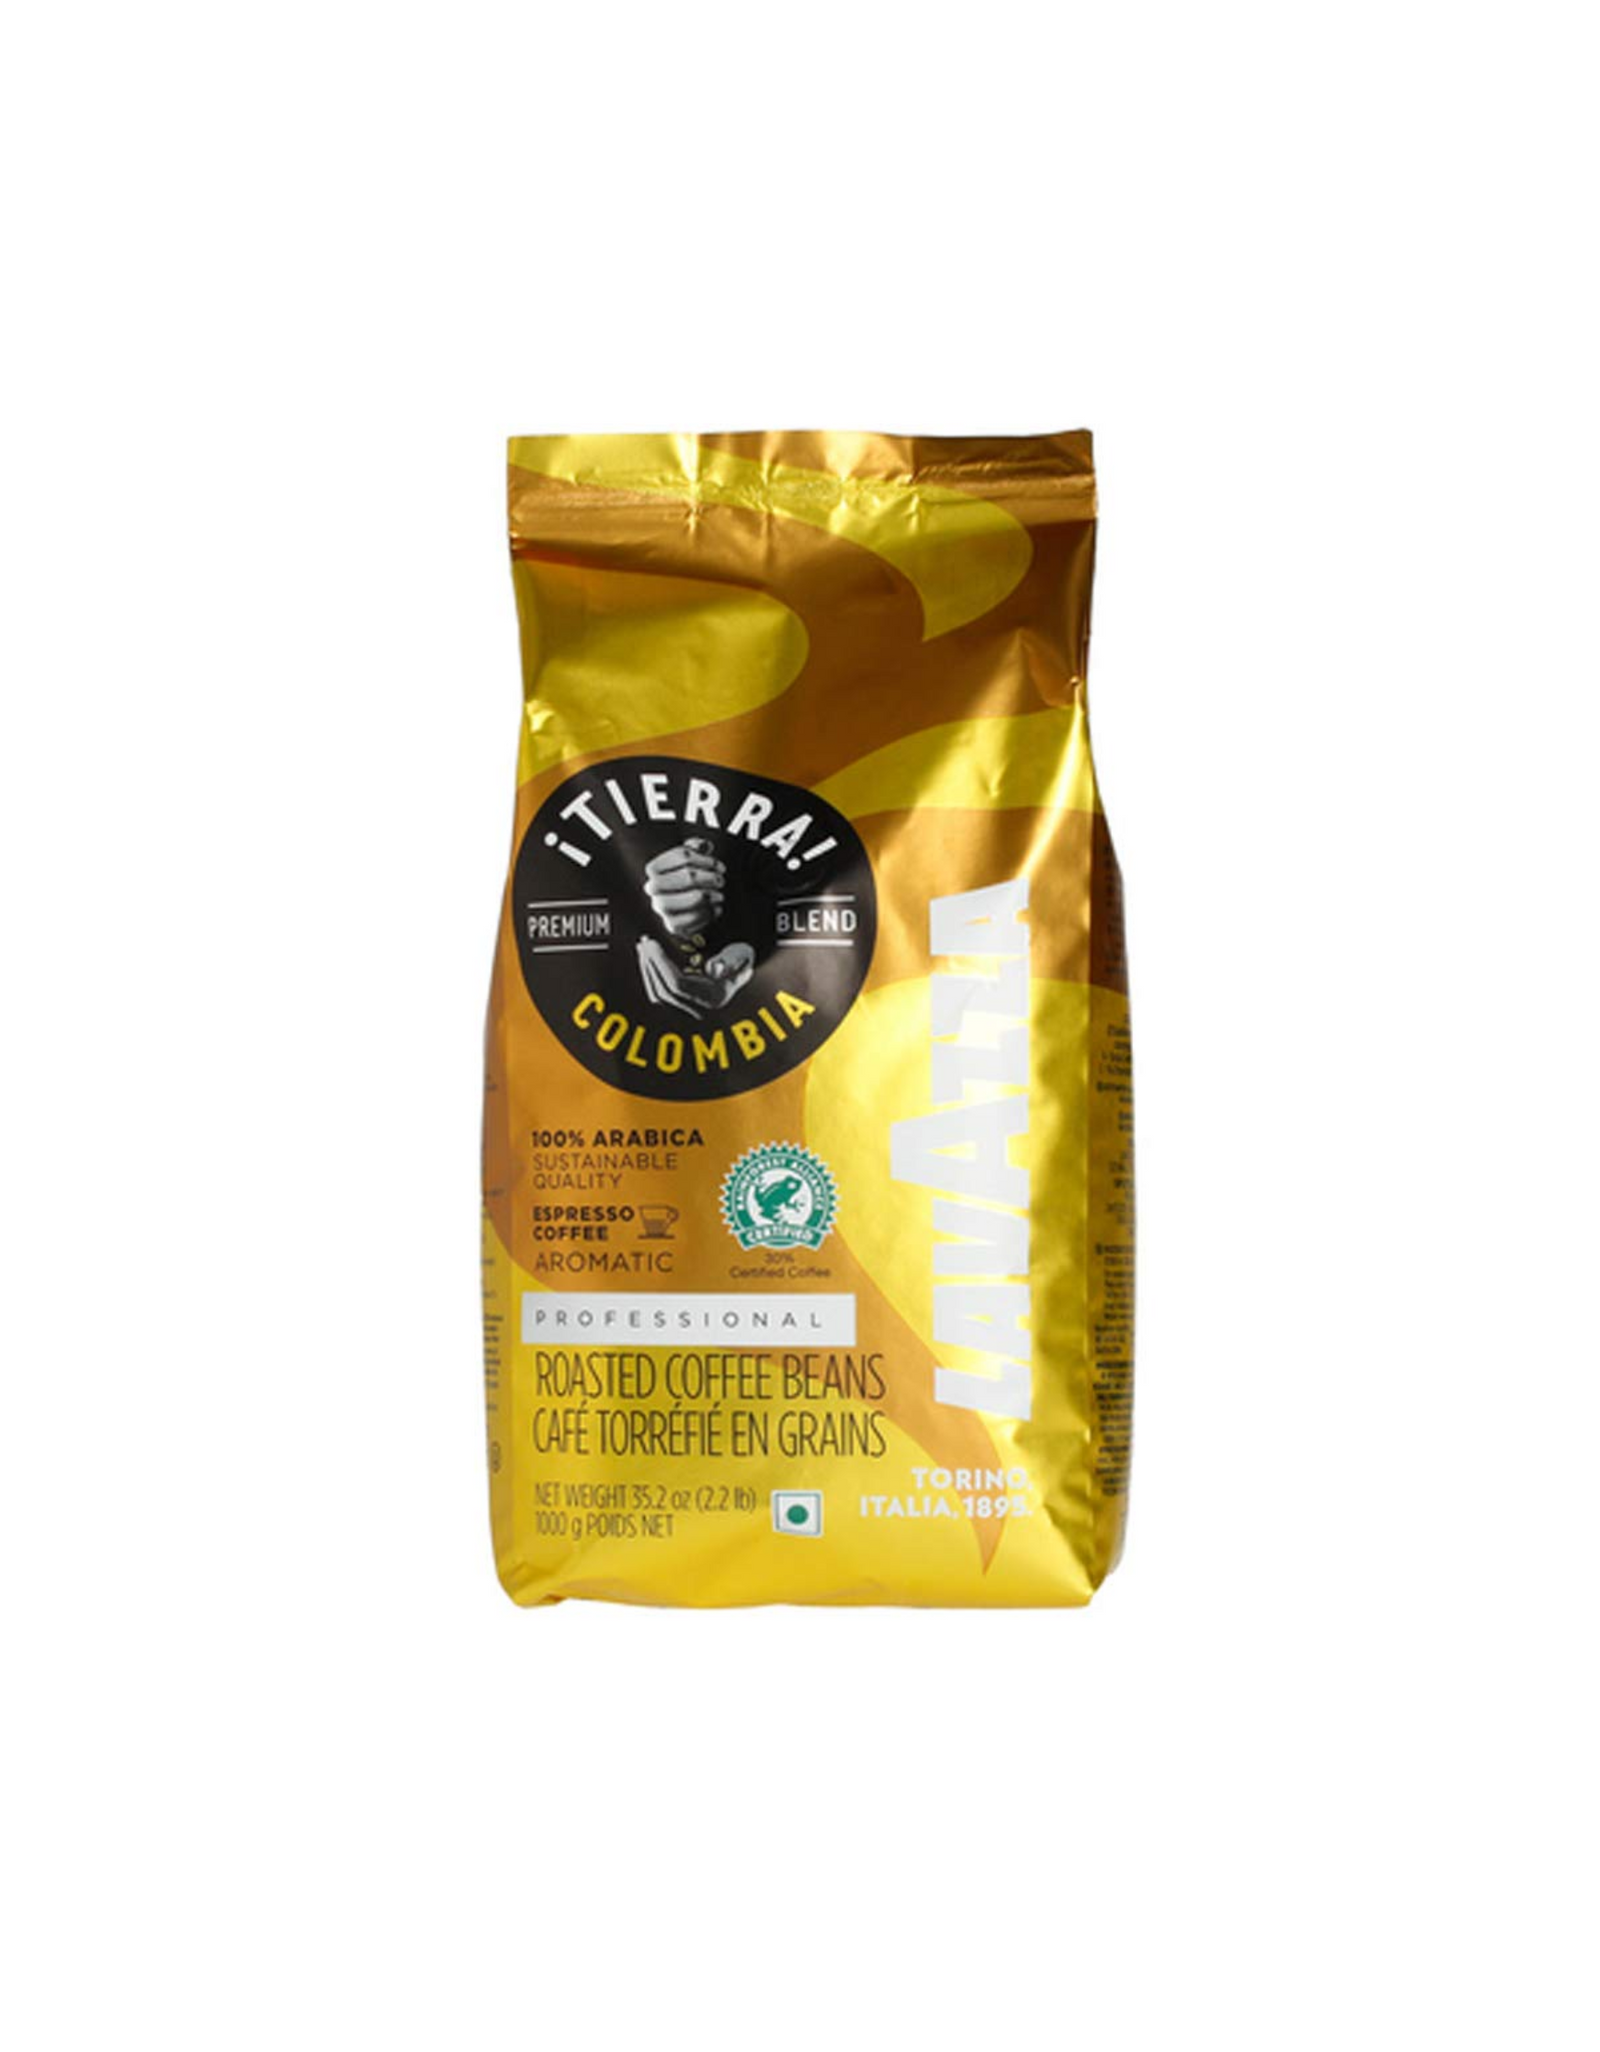 Lavazza ¡TIERRA! Premium Blend Coffee, Colombia 100% Arabica, Whole Bean Espresso, 2.2 lb.